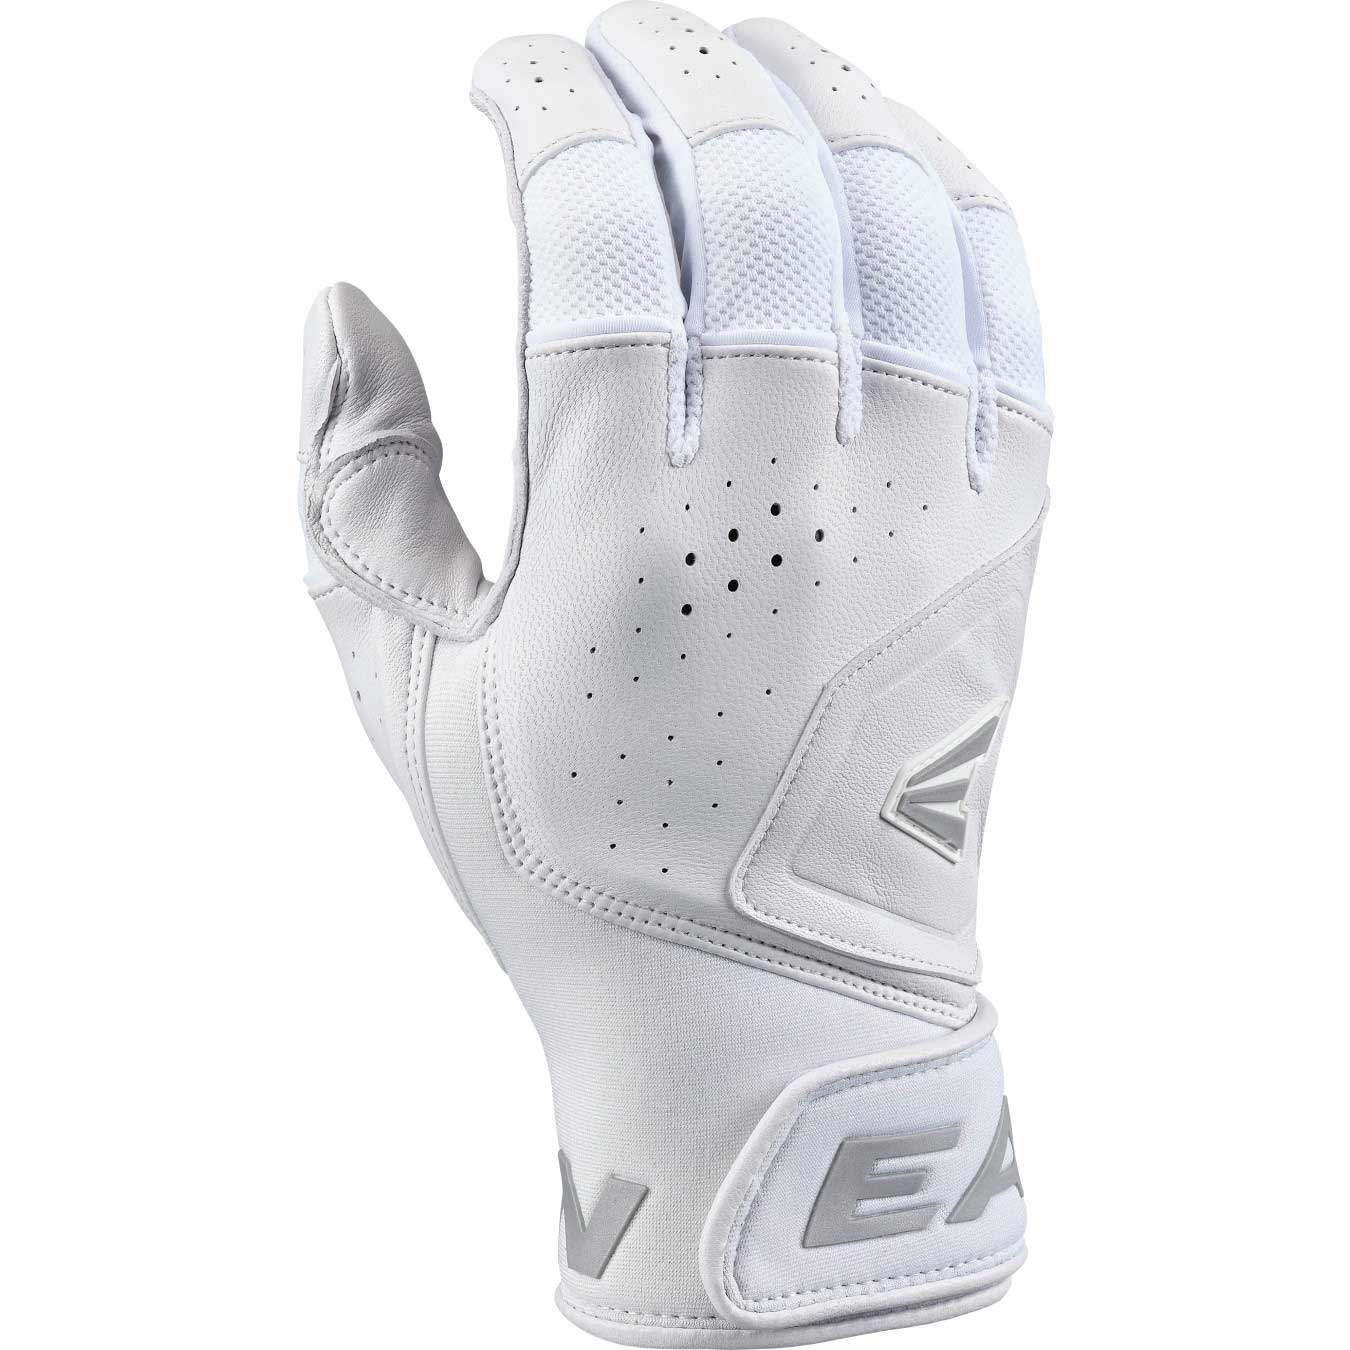 Easton MAV1 Pro Batting Gloves